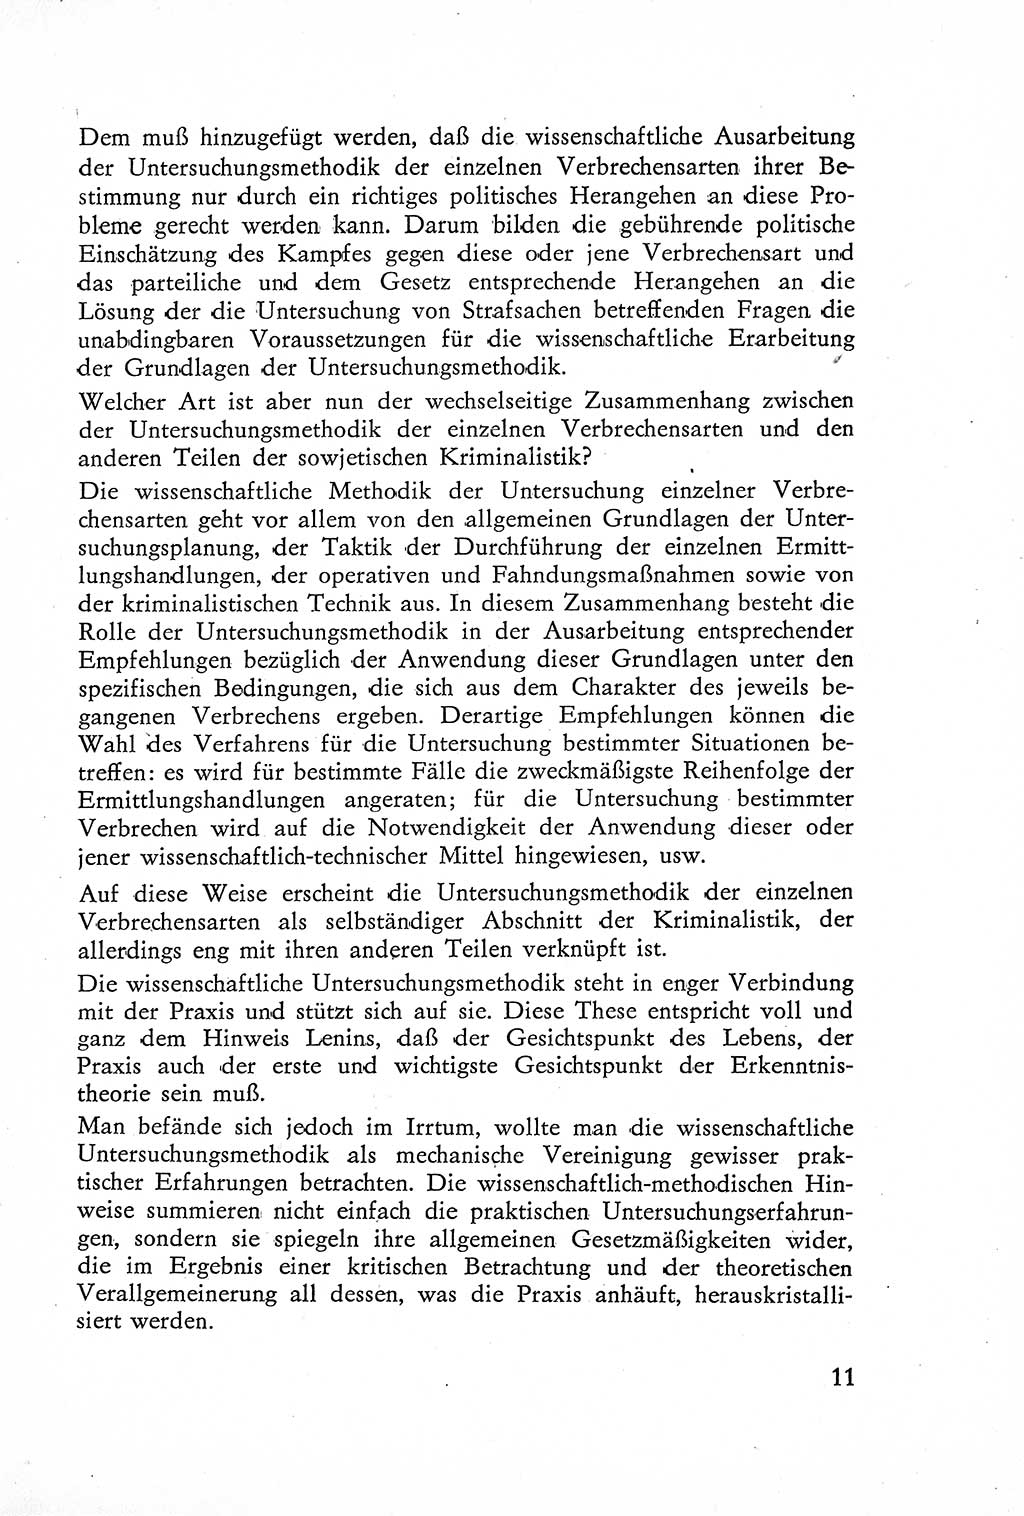 Die Untersuchung einzelner Verbrechensarten [Deutsche Demokratische Republik (DDR)] 1960, Seite 11 (Unters. Verbr.-Art. DDR 1960, S. 11)